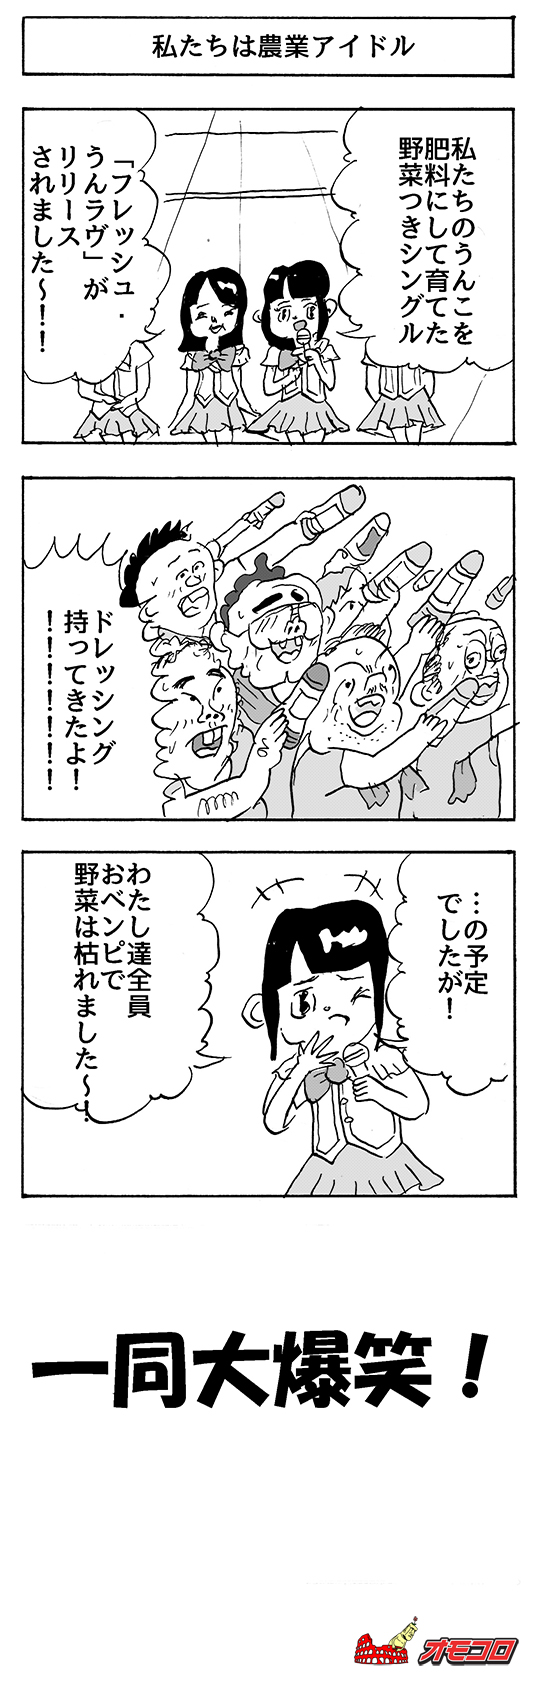 【4コマ漫画】私たち農業アイドル